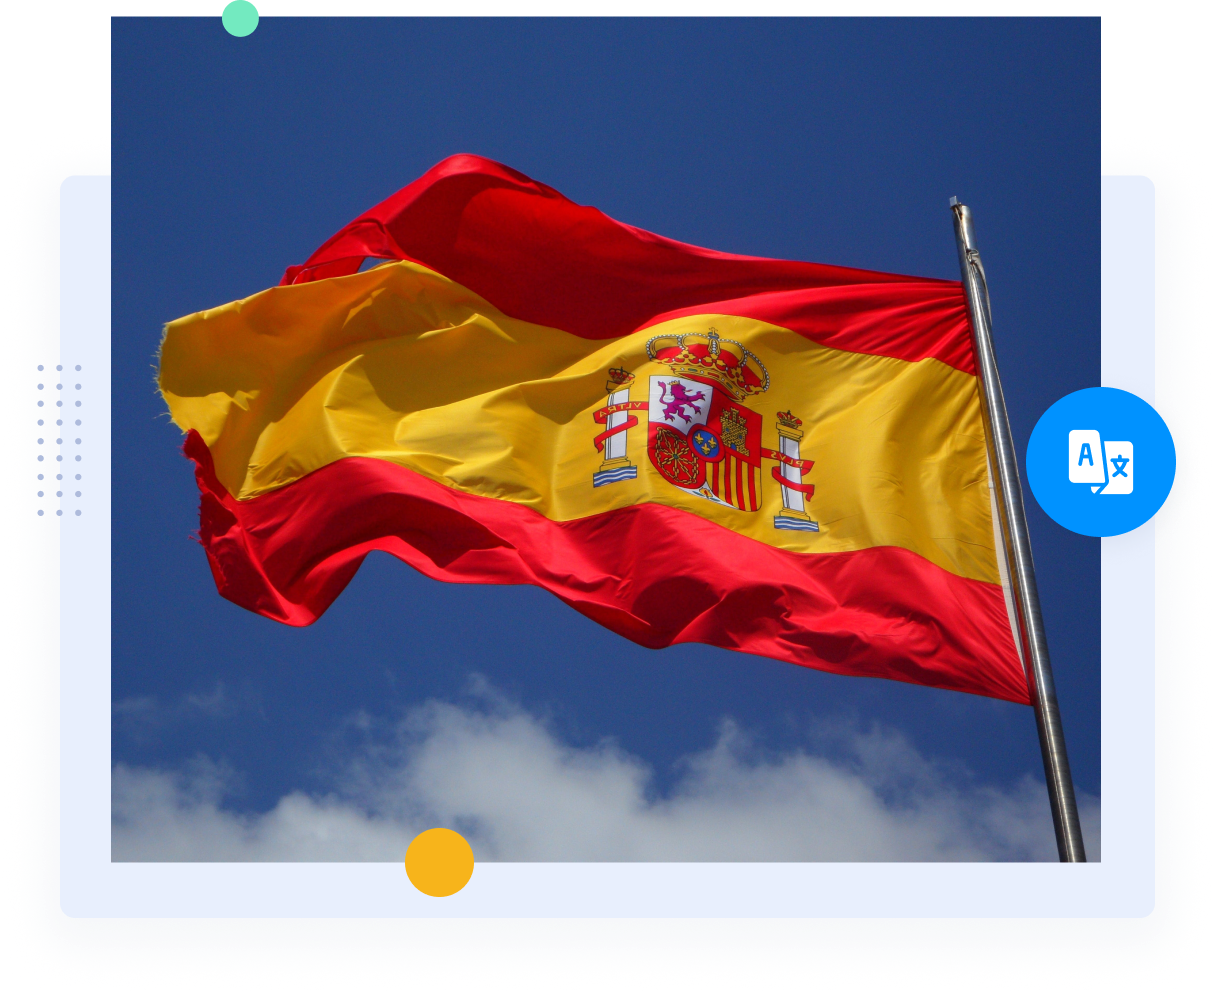 Червоно-жовтий прапор Іспанії, що представляє професійних іспанських перекладачів та перекладацькі послуги.